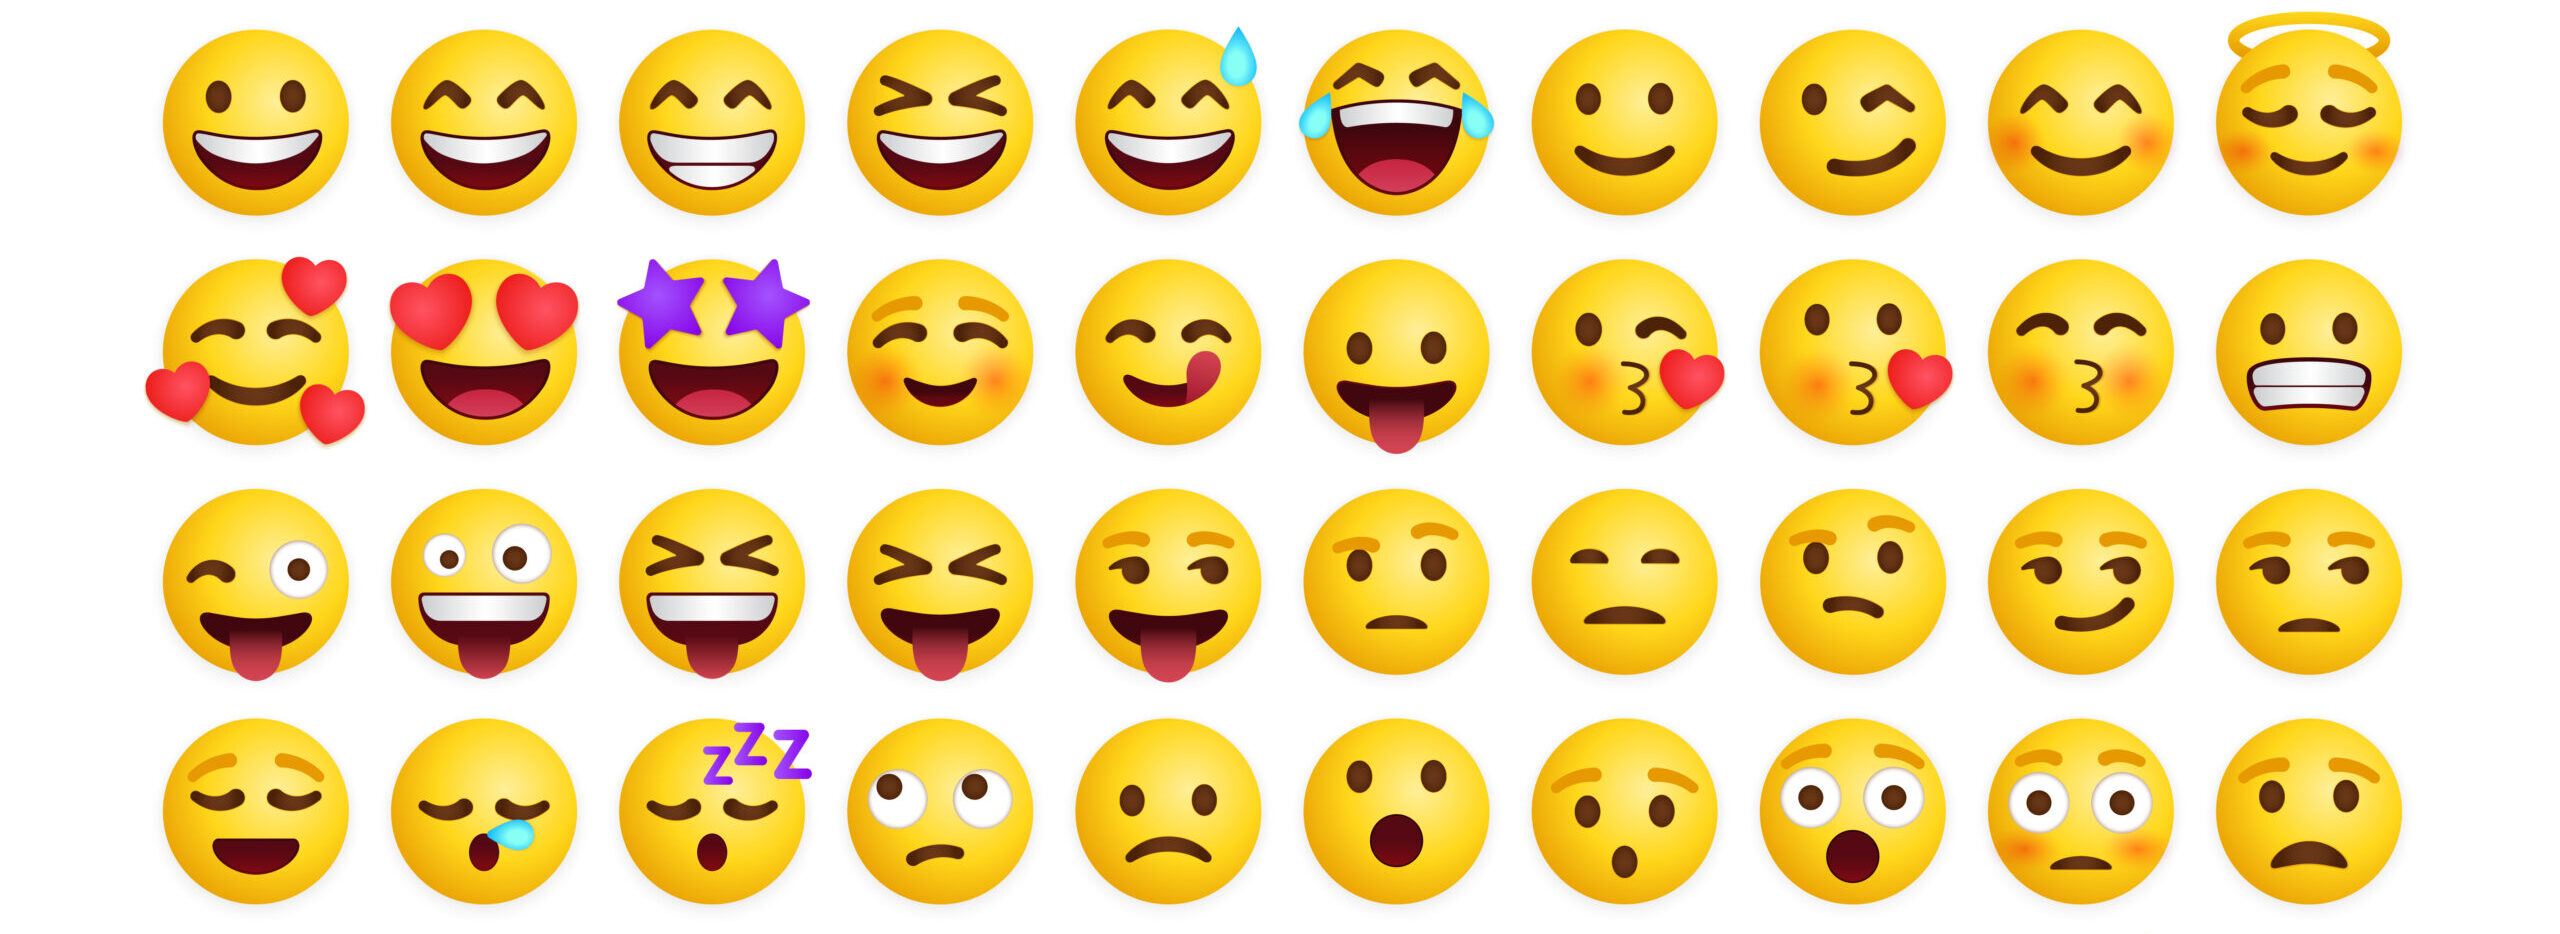 Bạn là một từng là người mới bắt đầu thiết kế và muốn tìm hiểu thêm về cách chỉnh sửa màu sắc cho font Emoji để tạo ra một phong cách riêng biệt? Hãy đến với TechNotes Blog và khám phá cách chỉnh sửa màu sắc cho font Emoji một cách nhanh chóng và dễ dàng nhất. Bắt đầu ngay từ năm 2024 để trở thành một nhà thiết kế chuyên nghiệp.